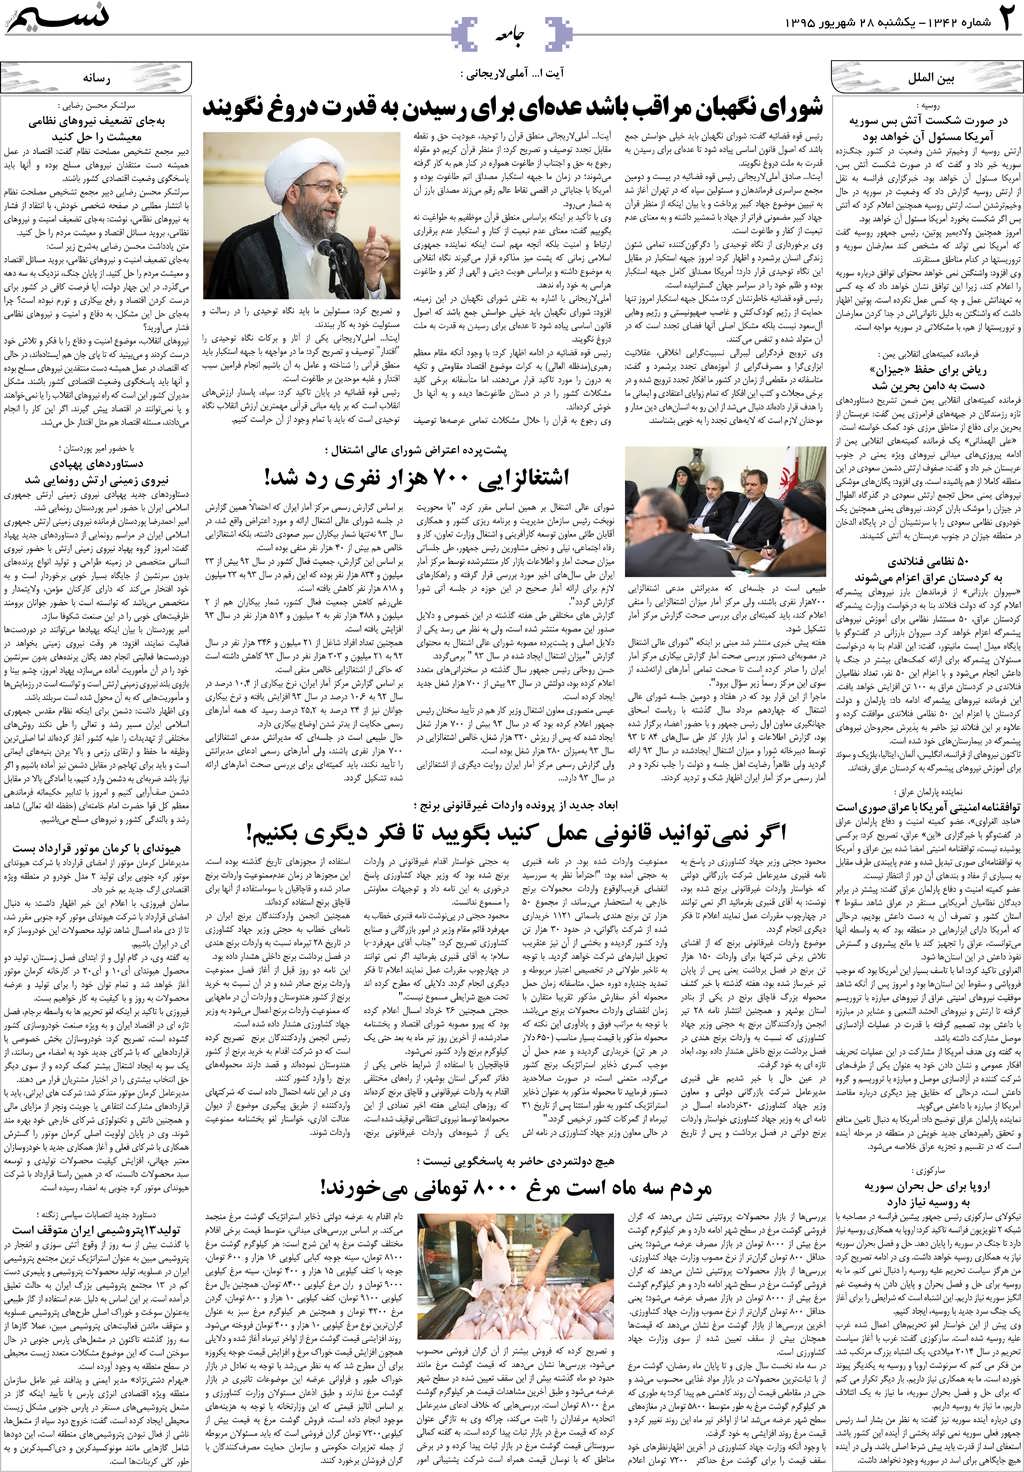 صفحه جامعه روزنامه نسیم شماره 1342